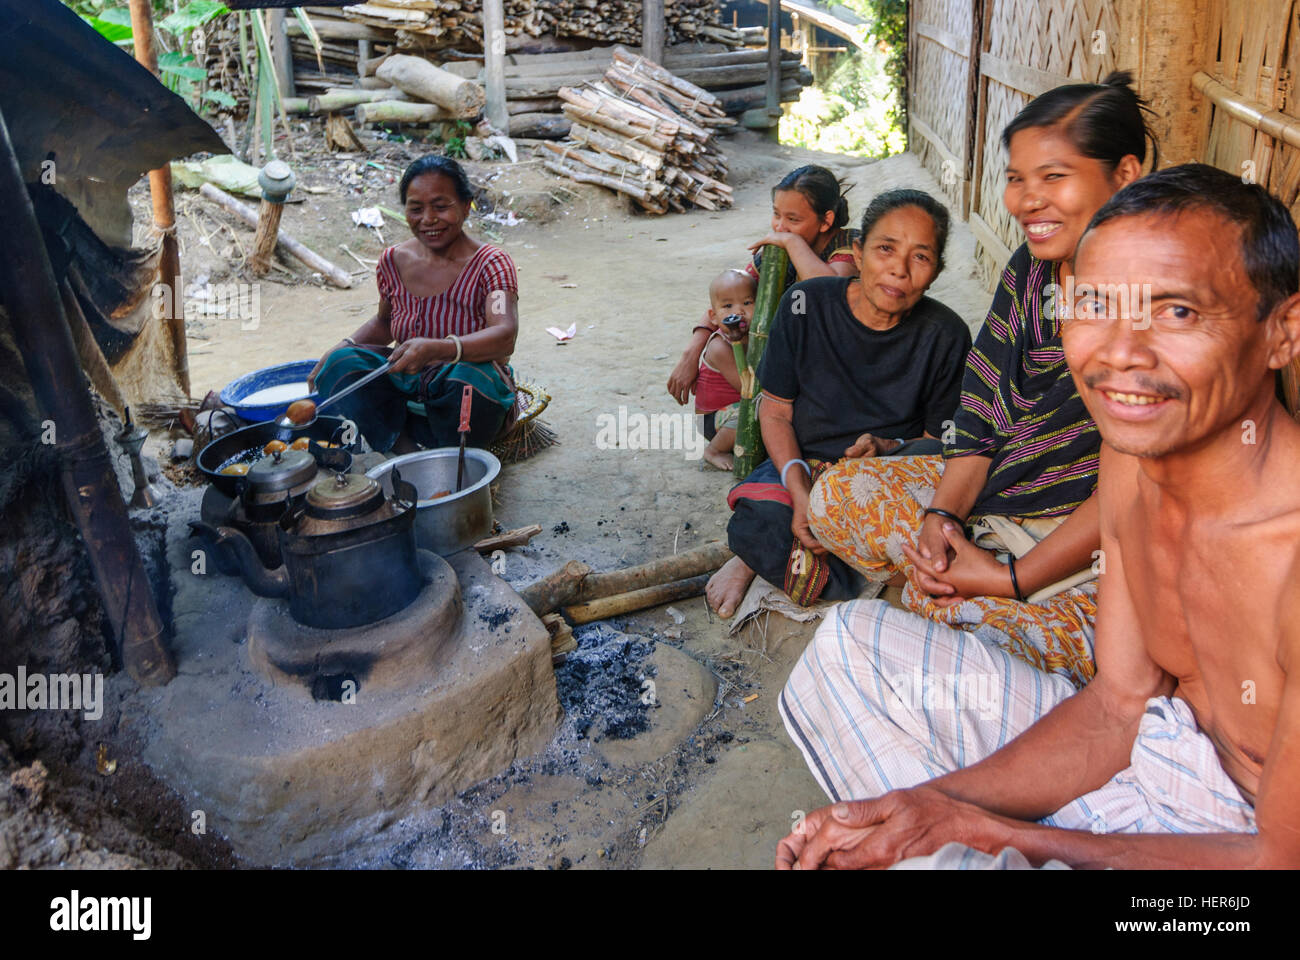 Rangamati: Gente de la minoría Chakma en una isla en el lago Kaptai, de la división de Chittagong, Bangladesh Foto de stock